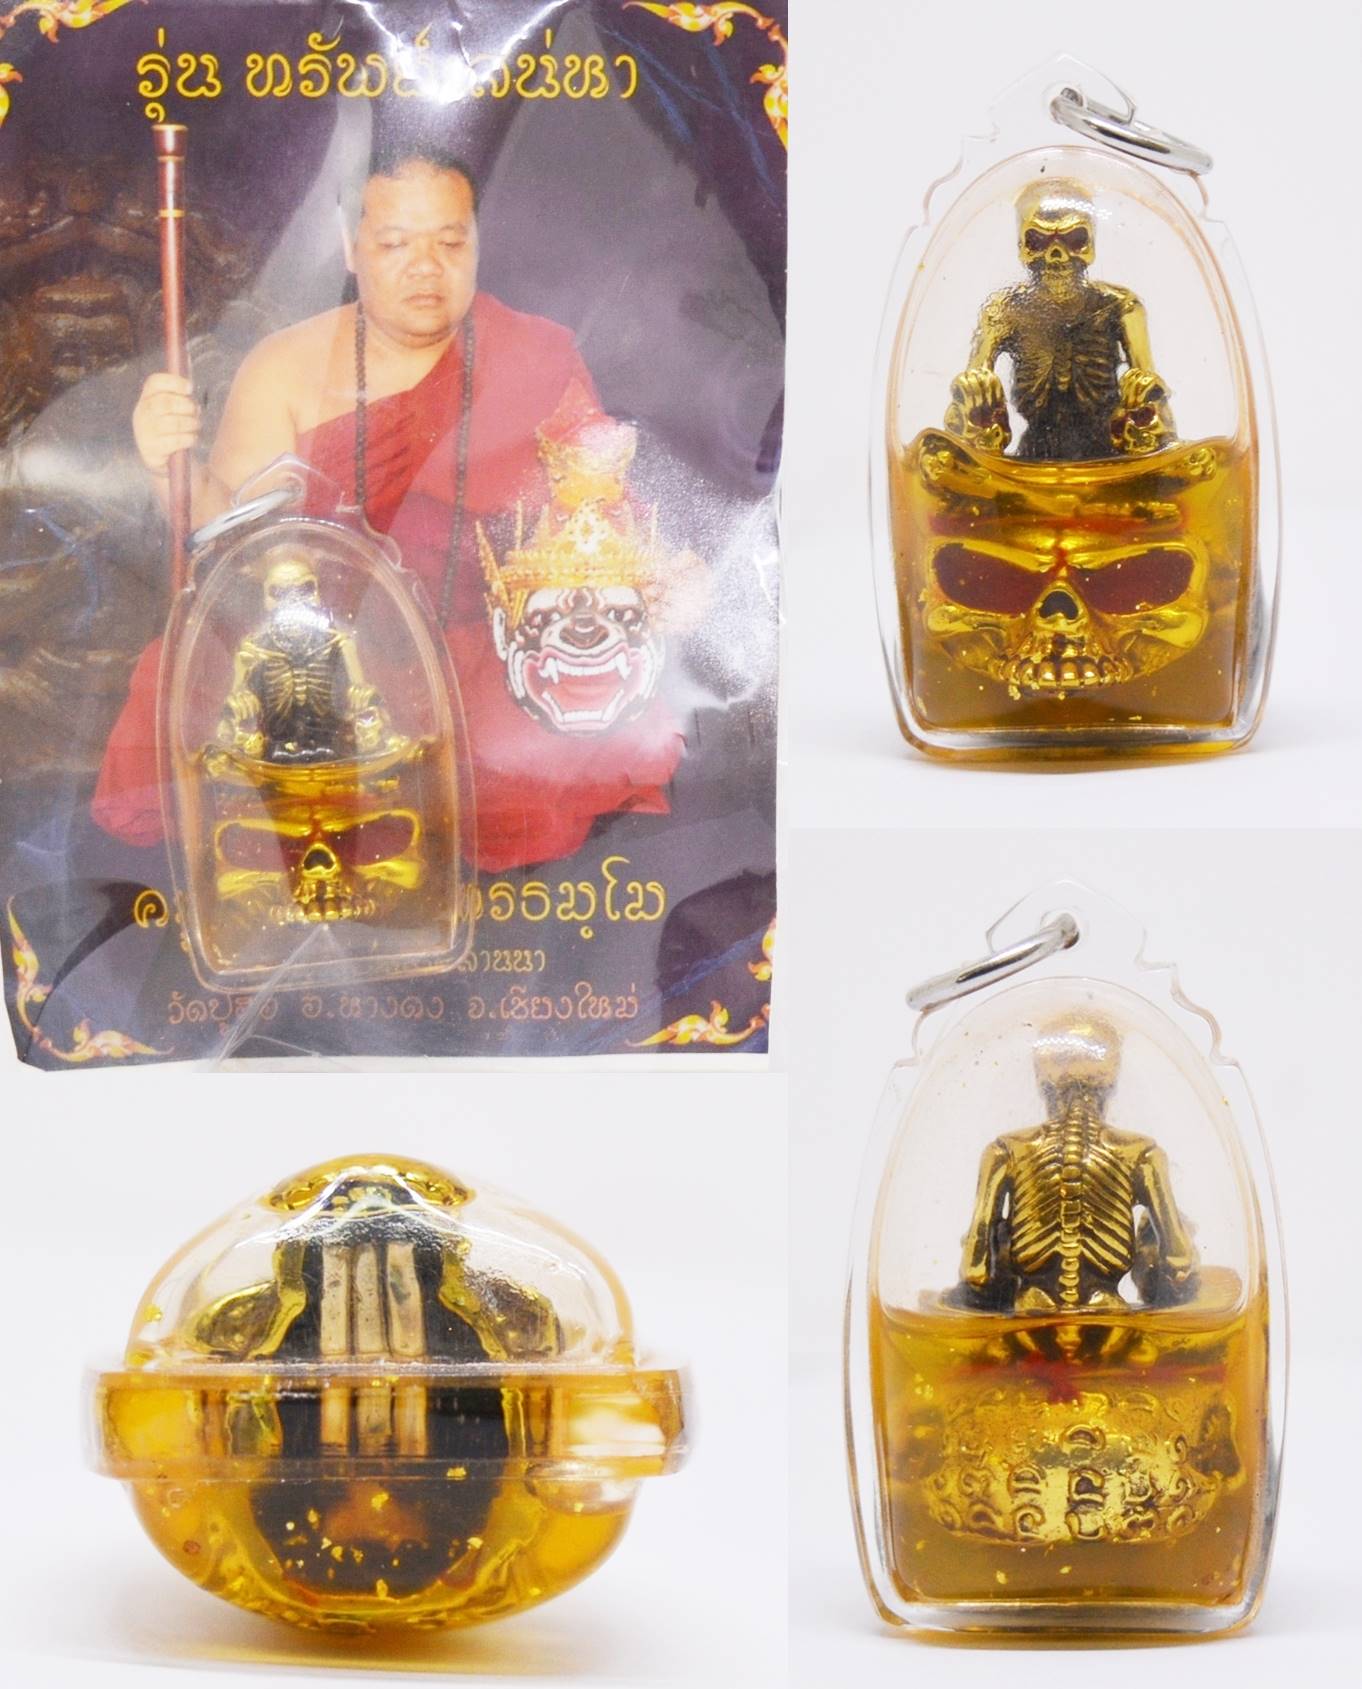 พรายนายเบี้ย เนื้อโลหะอาถรรย์ เลี่ยมน้ำมันโชคลาภ  ครูบาพร วัดปู่ฮ่อ เชียงใหม่ Thai Amulet 2559